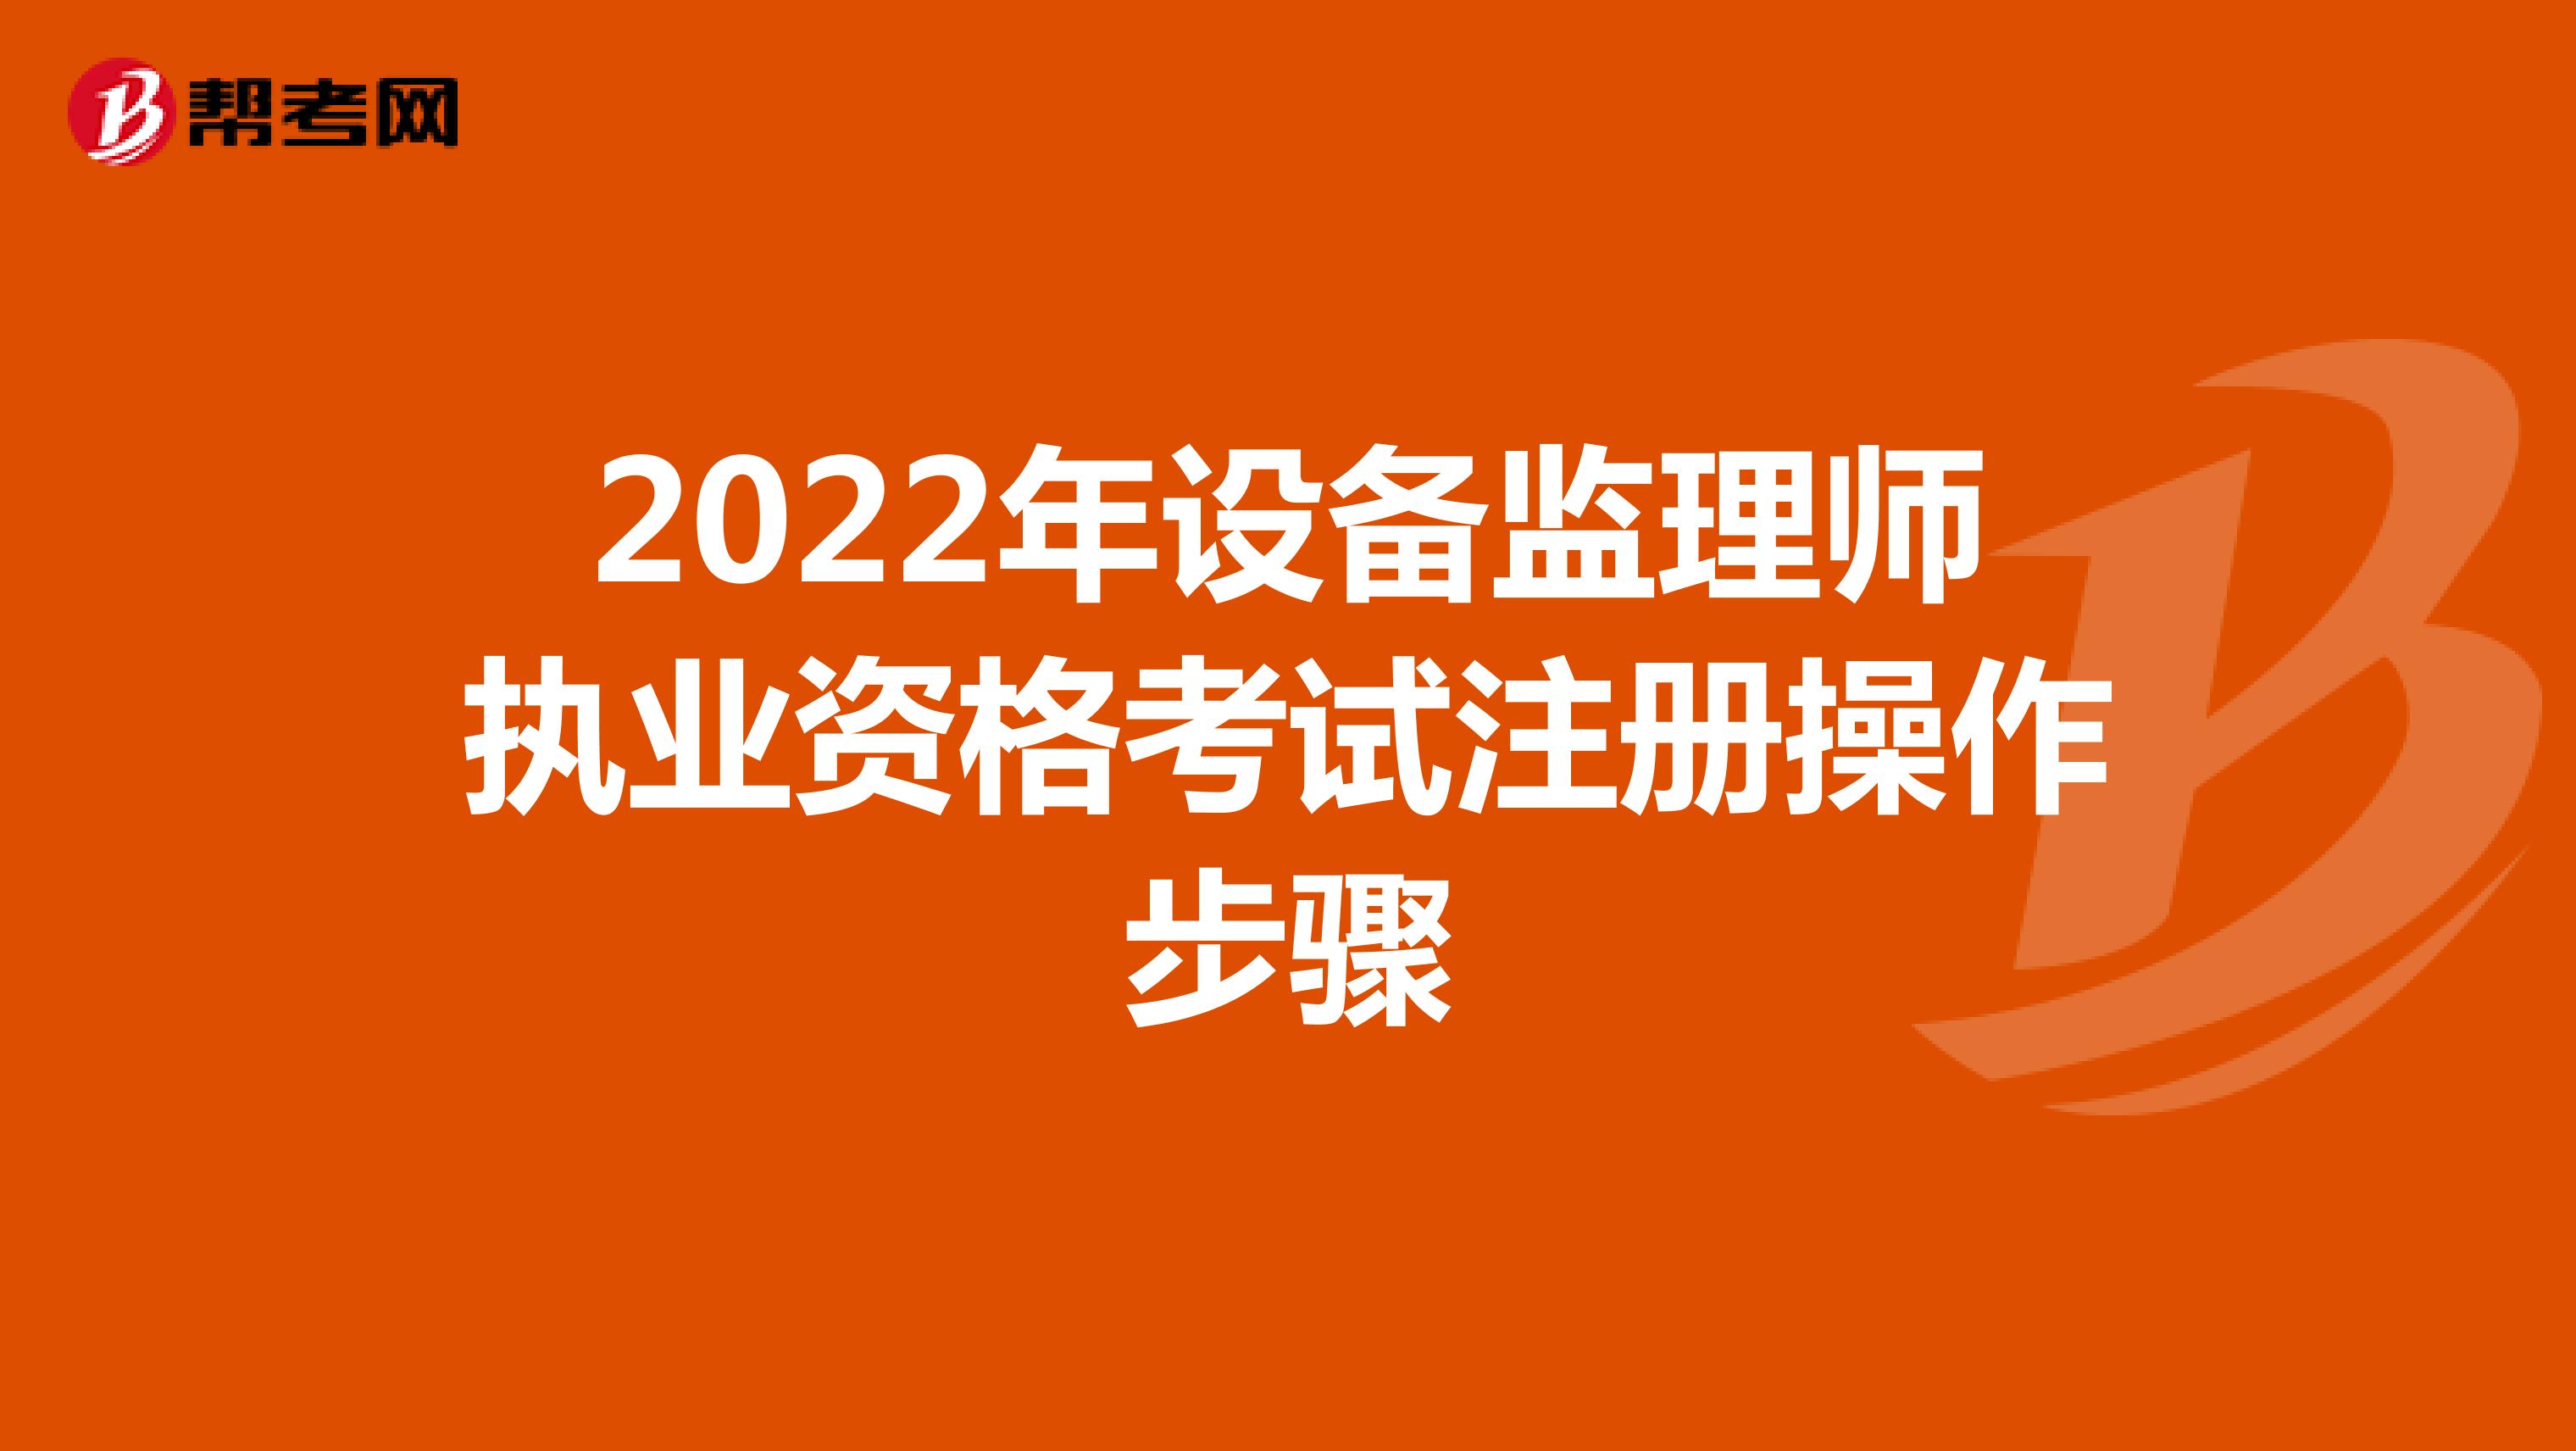 2022年设备监理师执业资格考试注册操作步骤